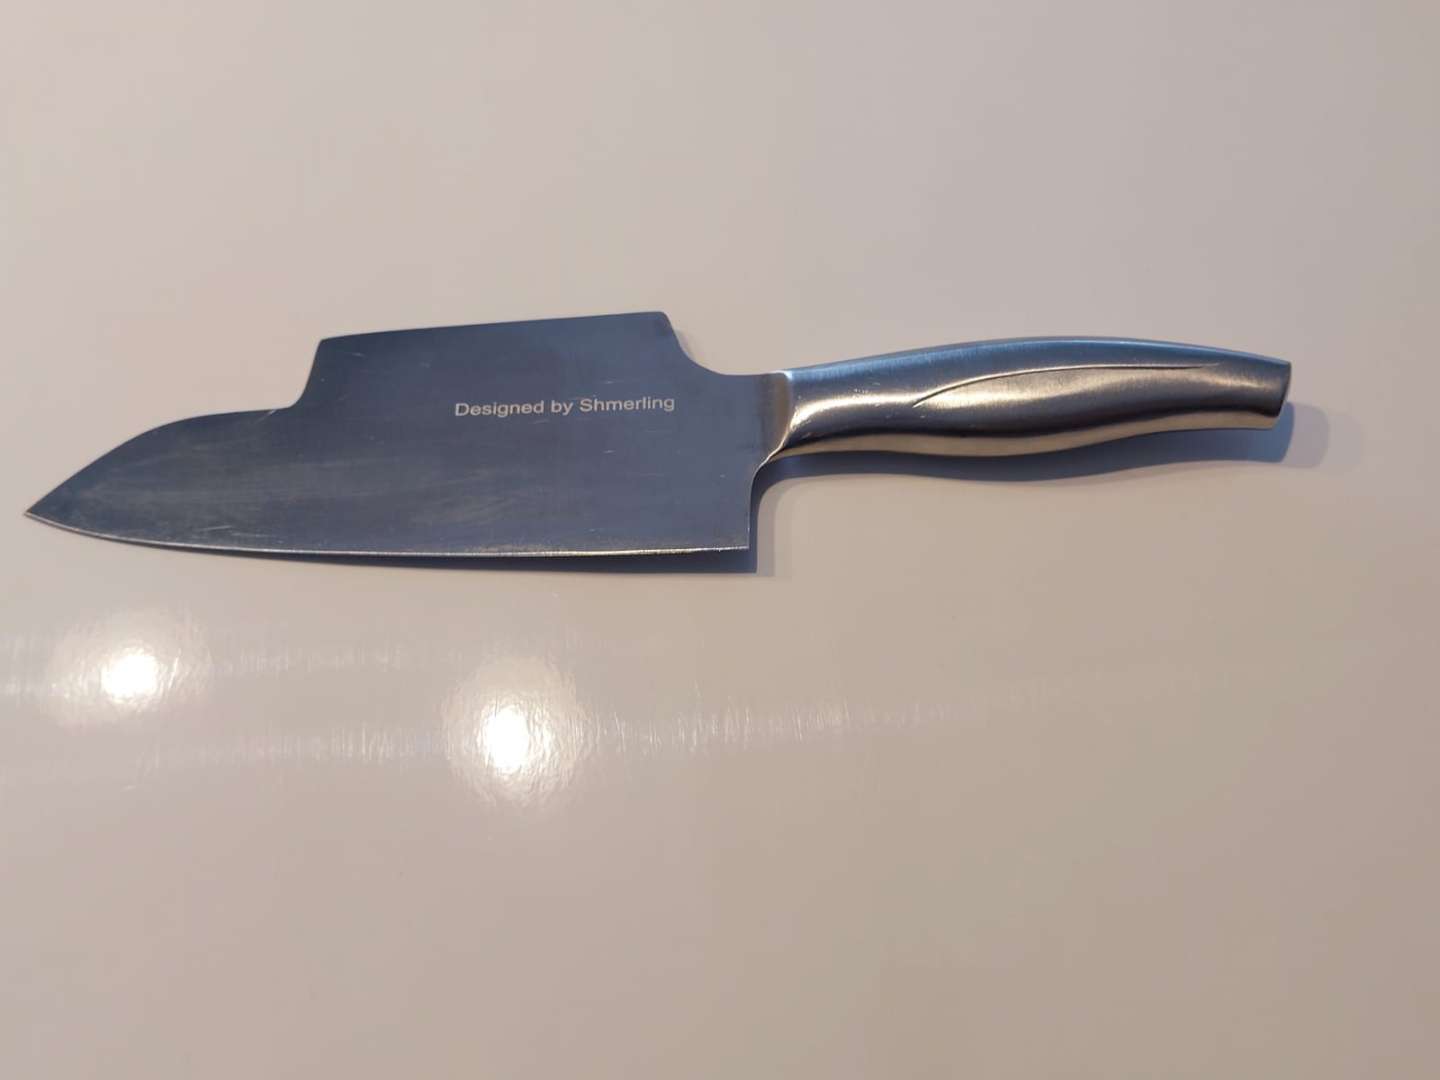 סכין איסוף Pick-up רב שימושית Shmerling Design ב- 99 ₪ משלוח חינם